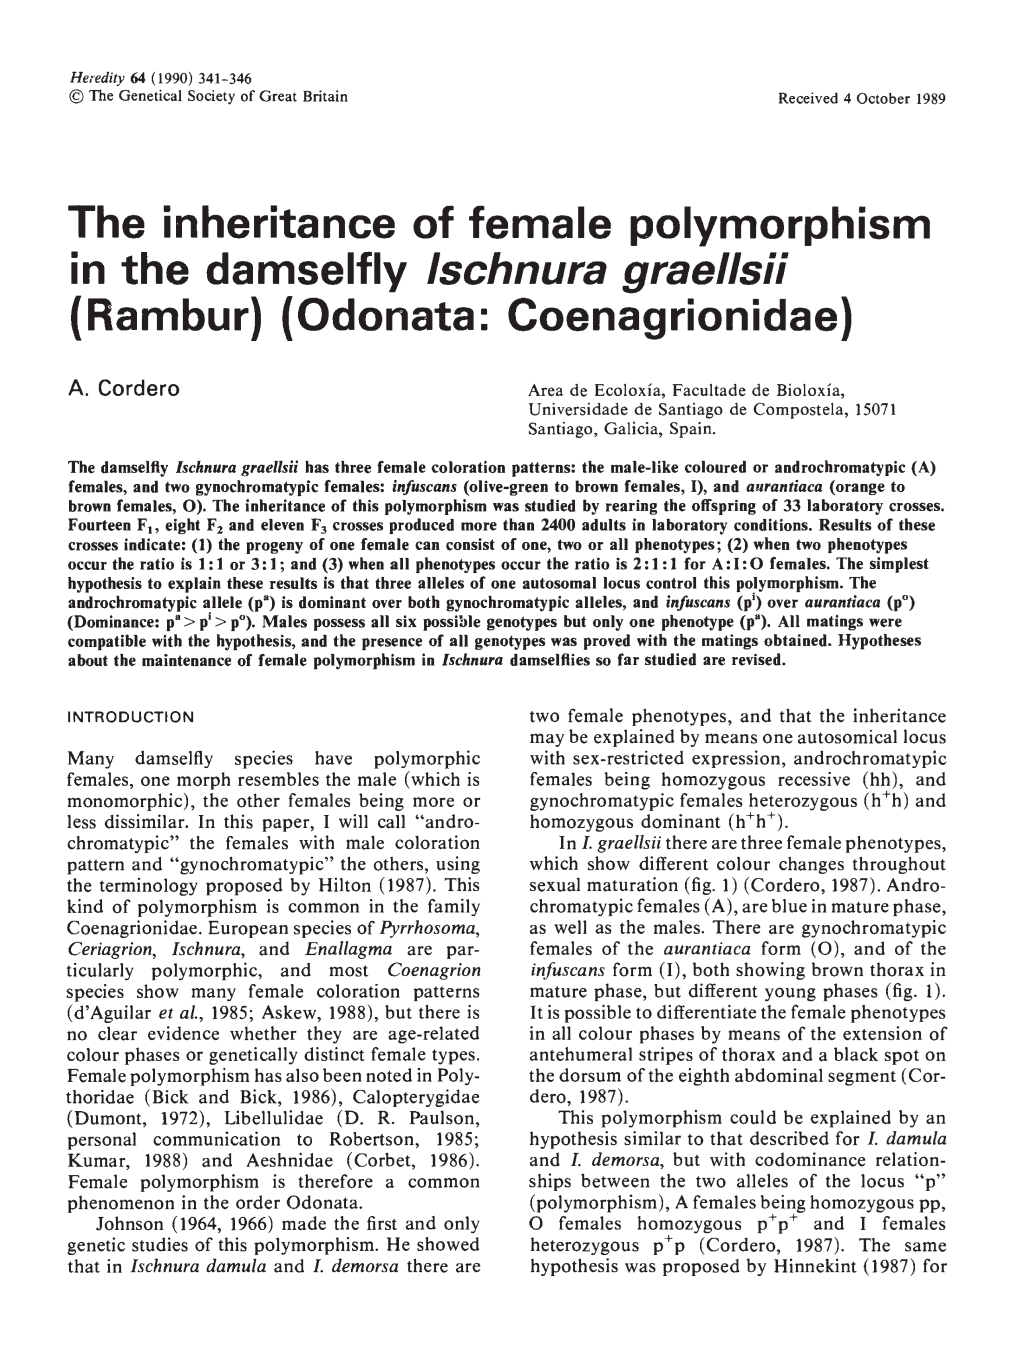 The Inheritance of Female Polymorphism in the Damseifly Ischnura Graellsii (Rambur) (Odonata: Coenagrionidae)